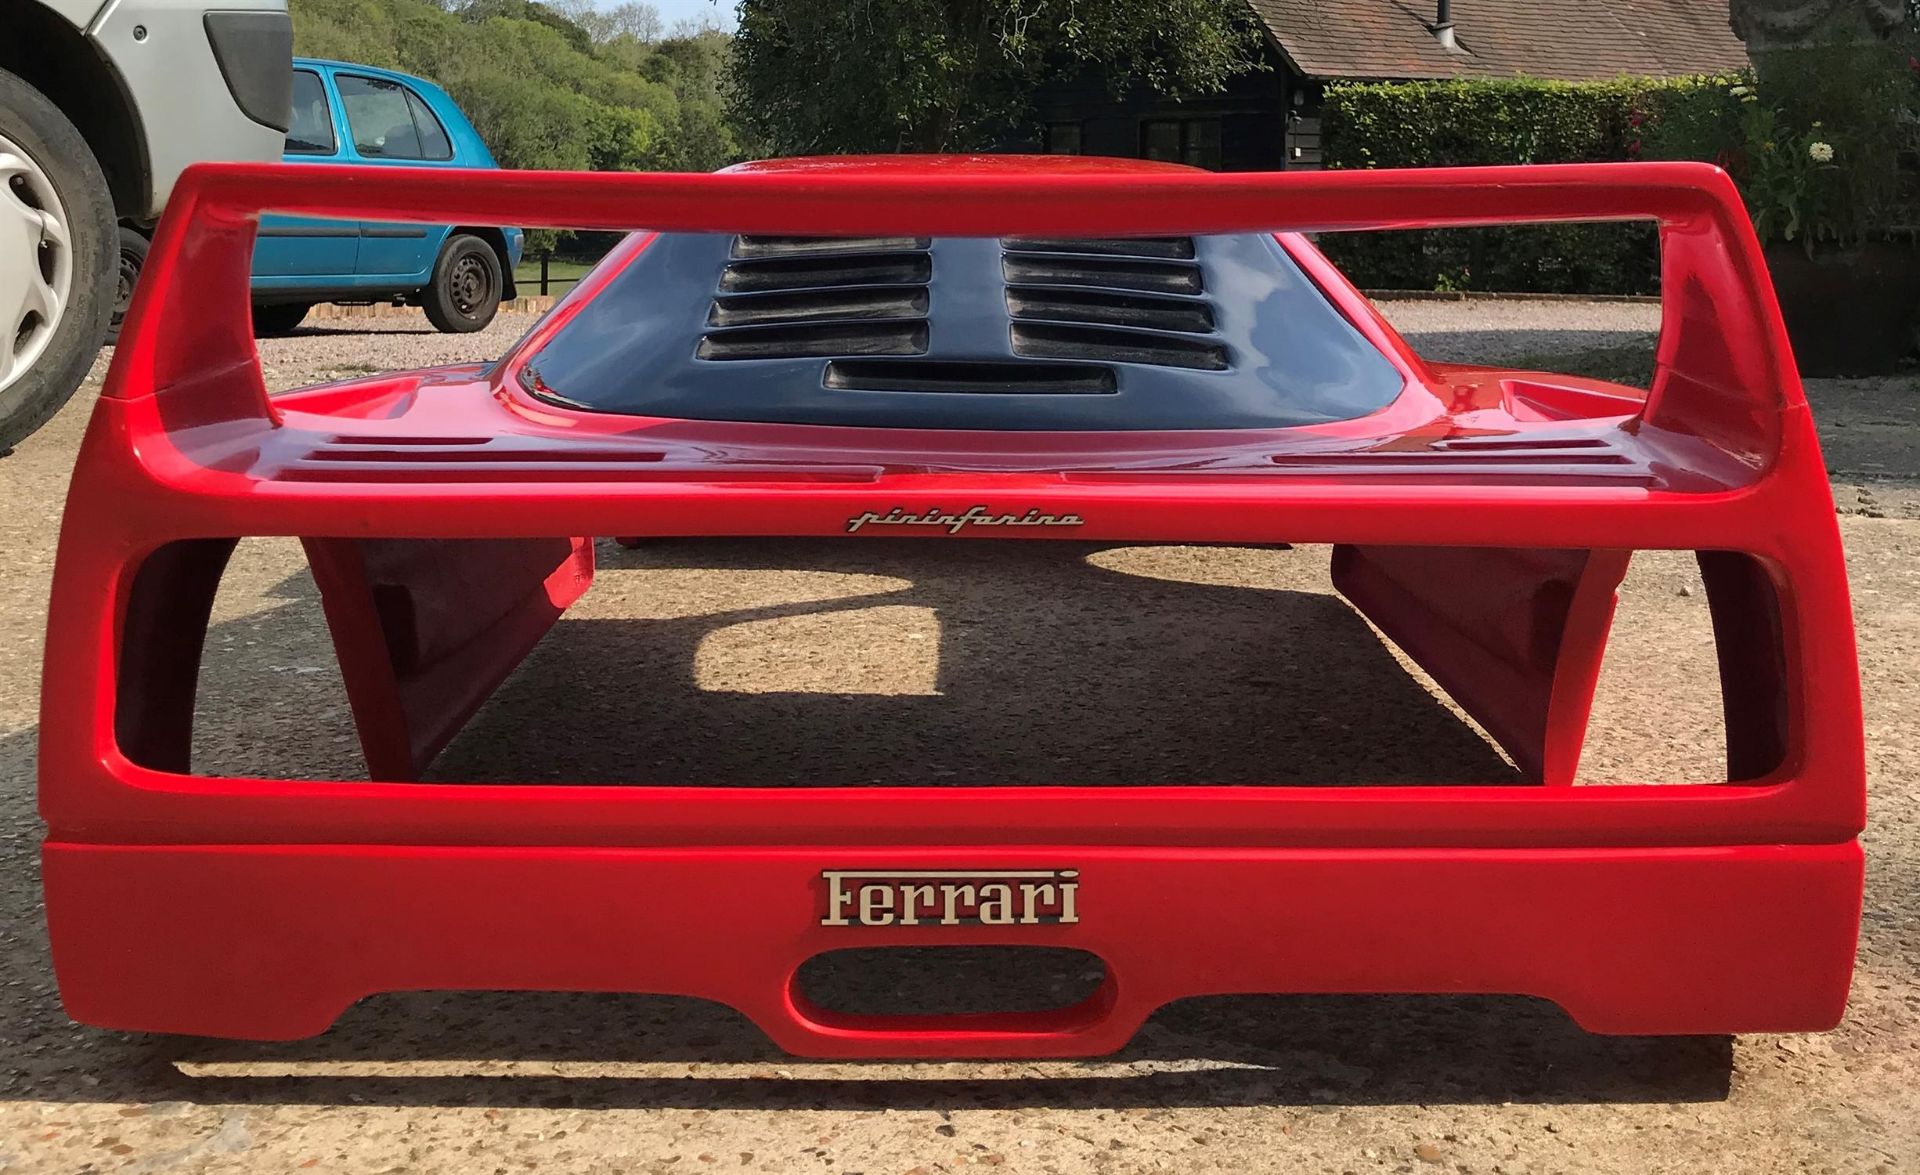 1/3 Scale 'Ferrari F40' Glassfibre Display Model - Image 5 of 8